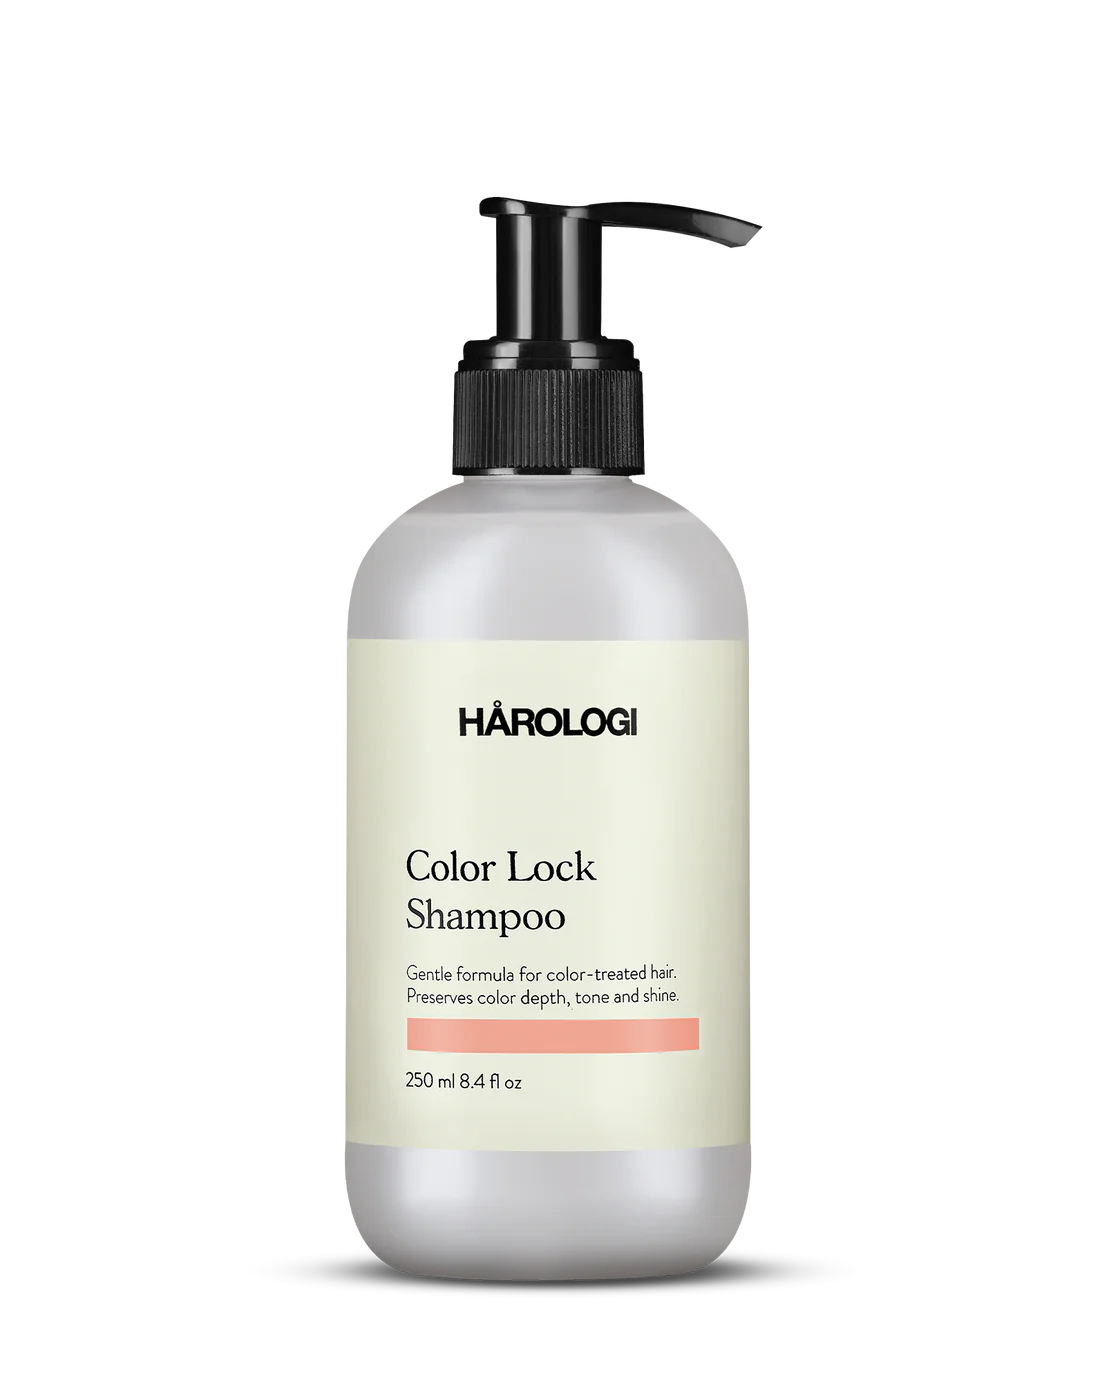 Color lock duo hårologi - Shampoo och conditioner